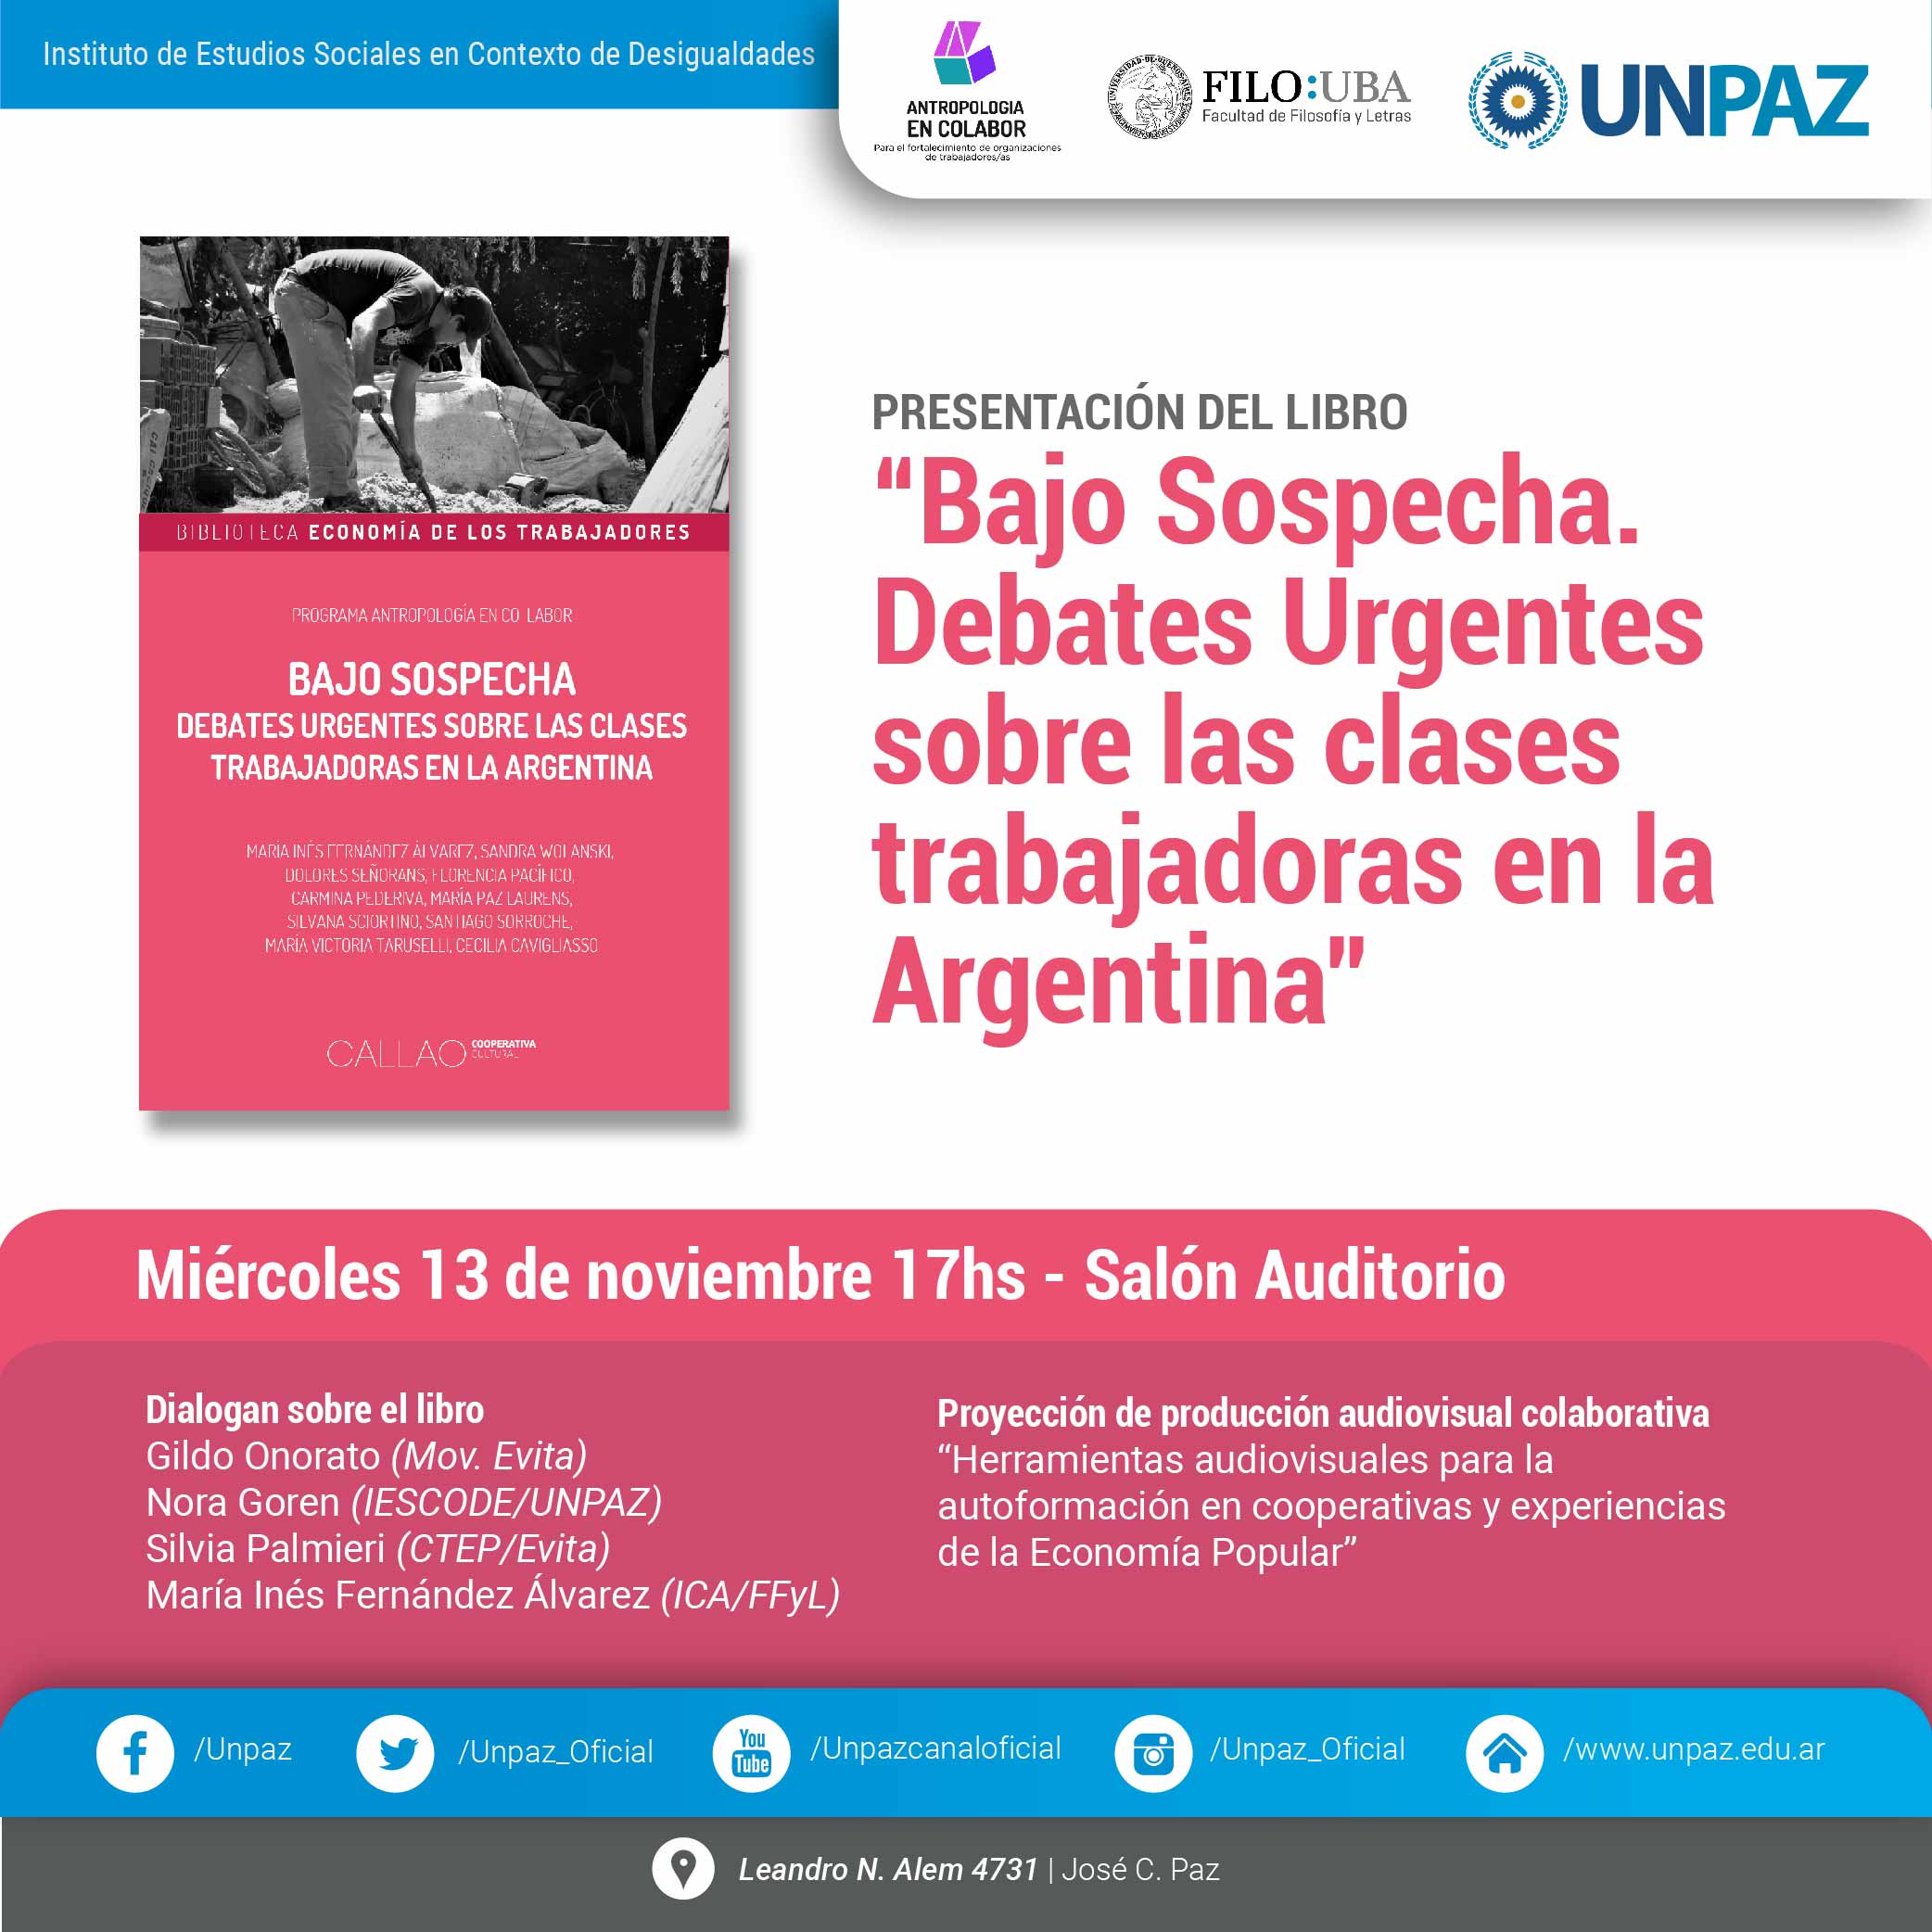 Presentación del libro “Bajo sospecha. Debates urgentes de las clases trabajadoras en la Argentina”